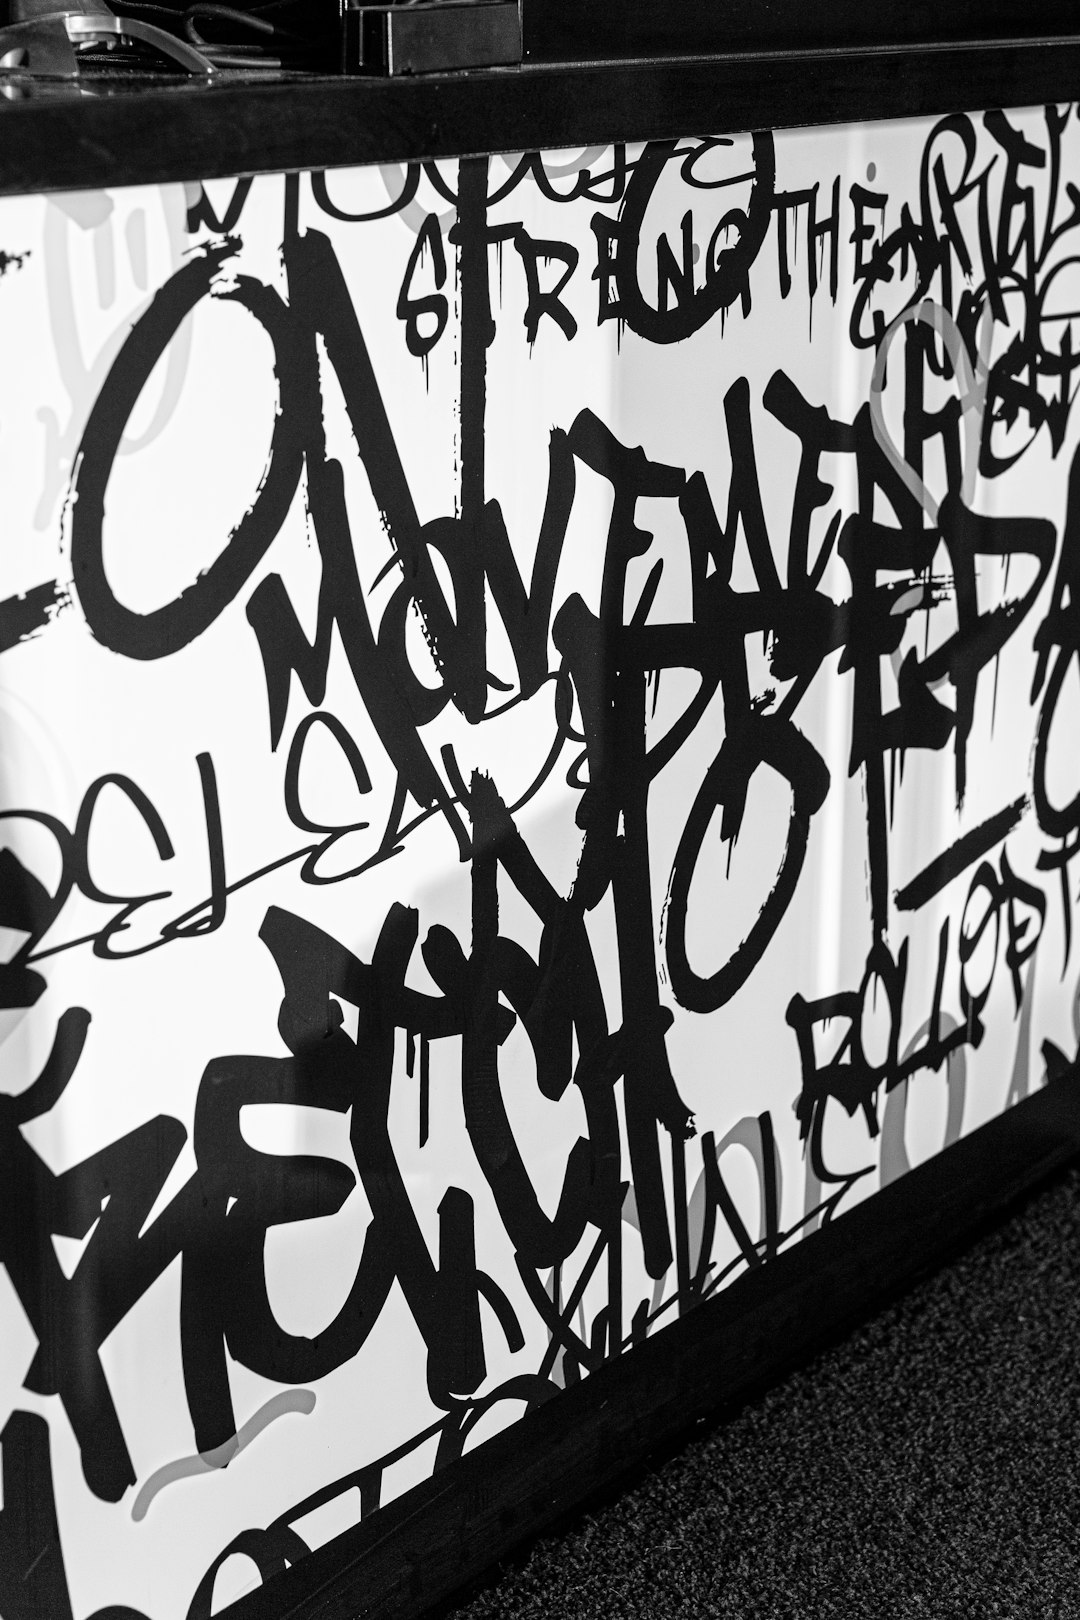 black and white wall graffiti